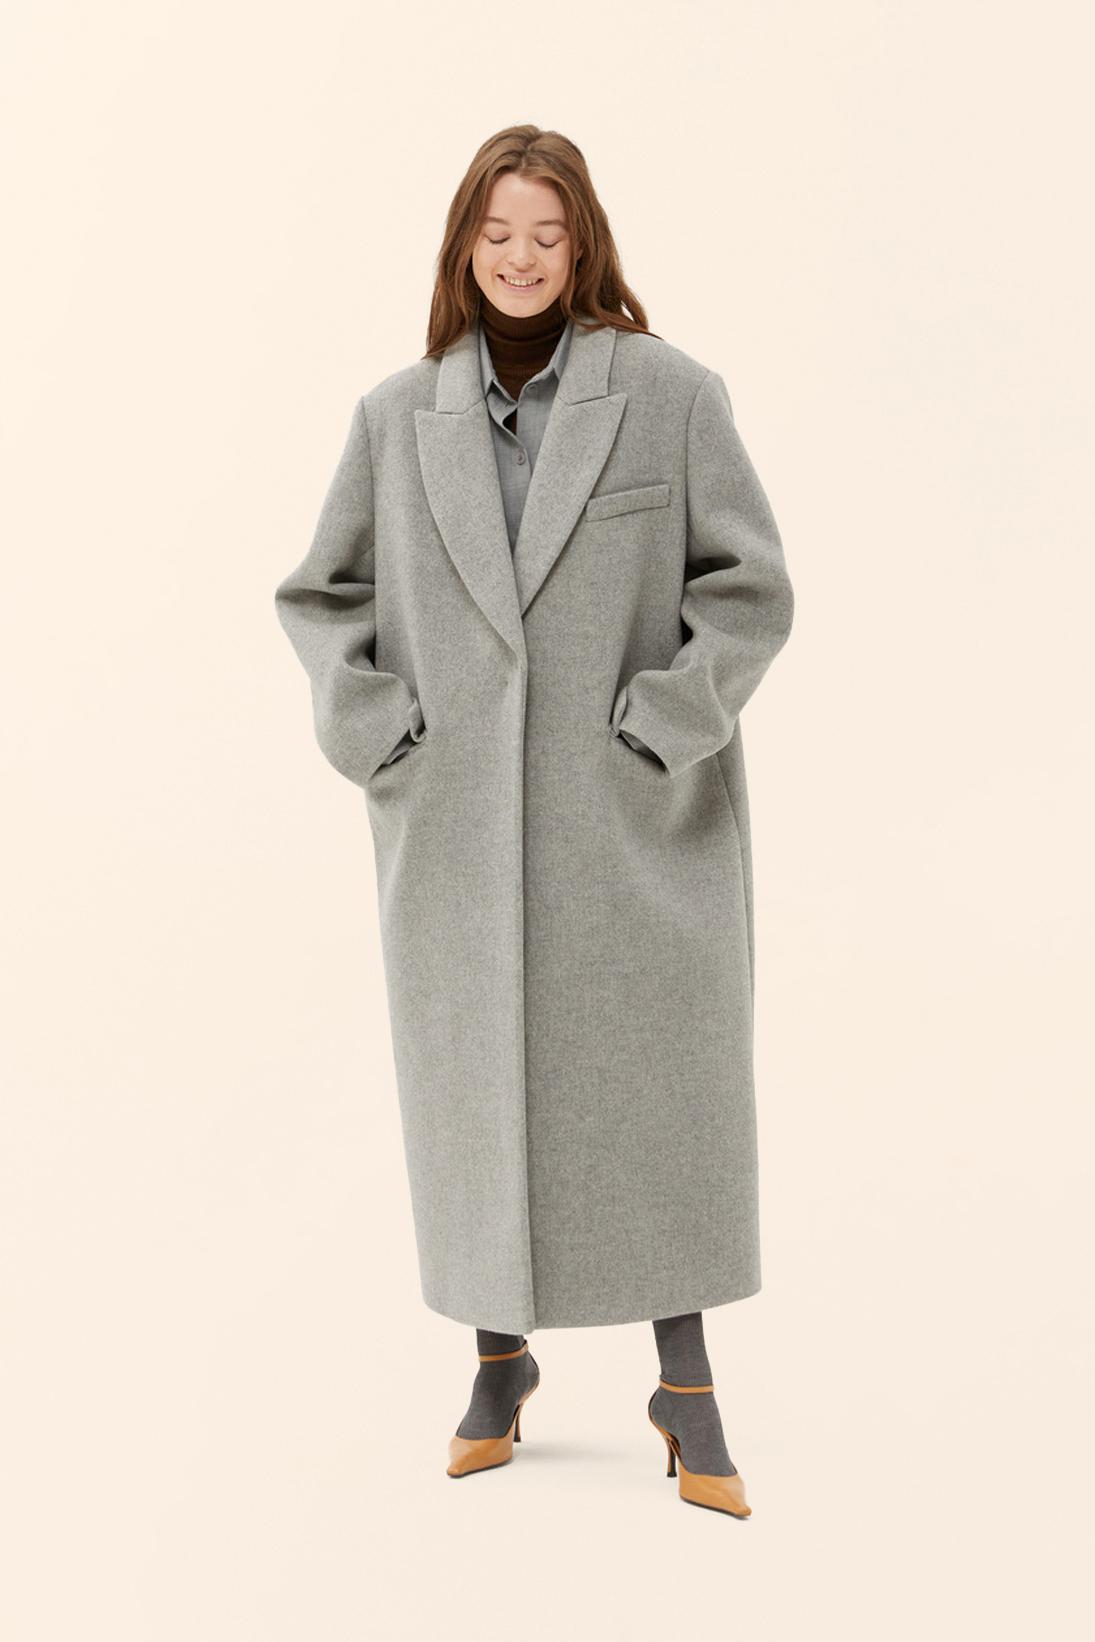 Объемное пальто, Choux, 55 980 руб. (choux.ru)